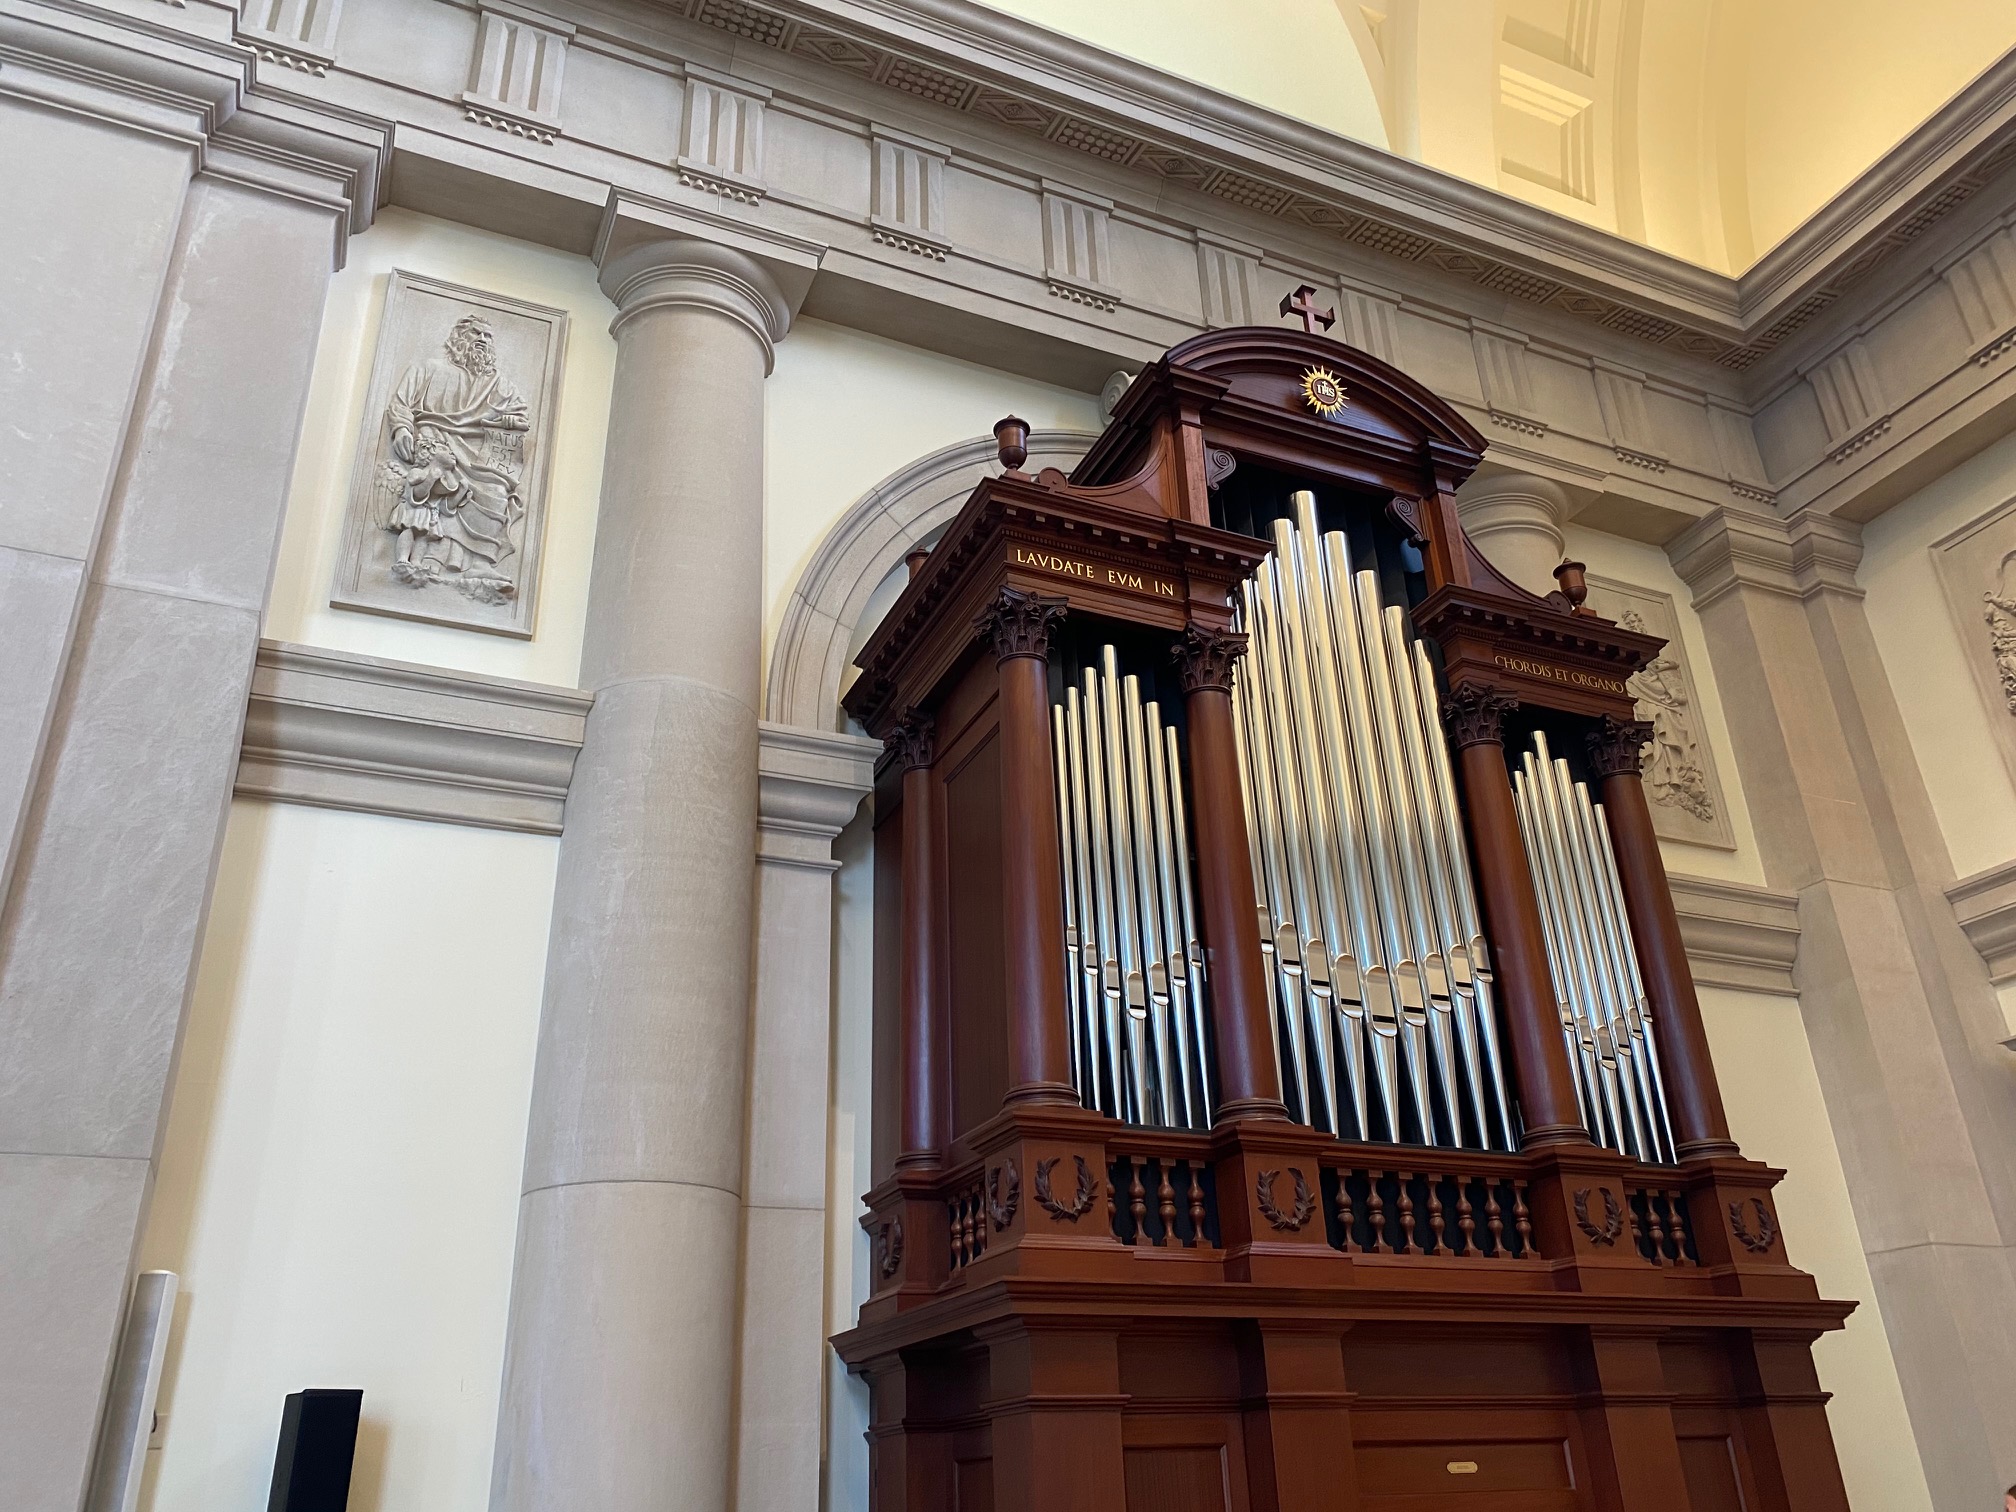 Chapel organ dedicated